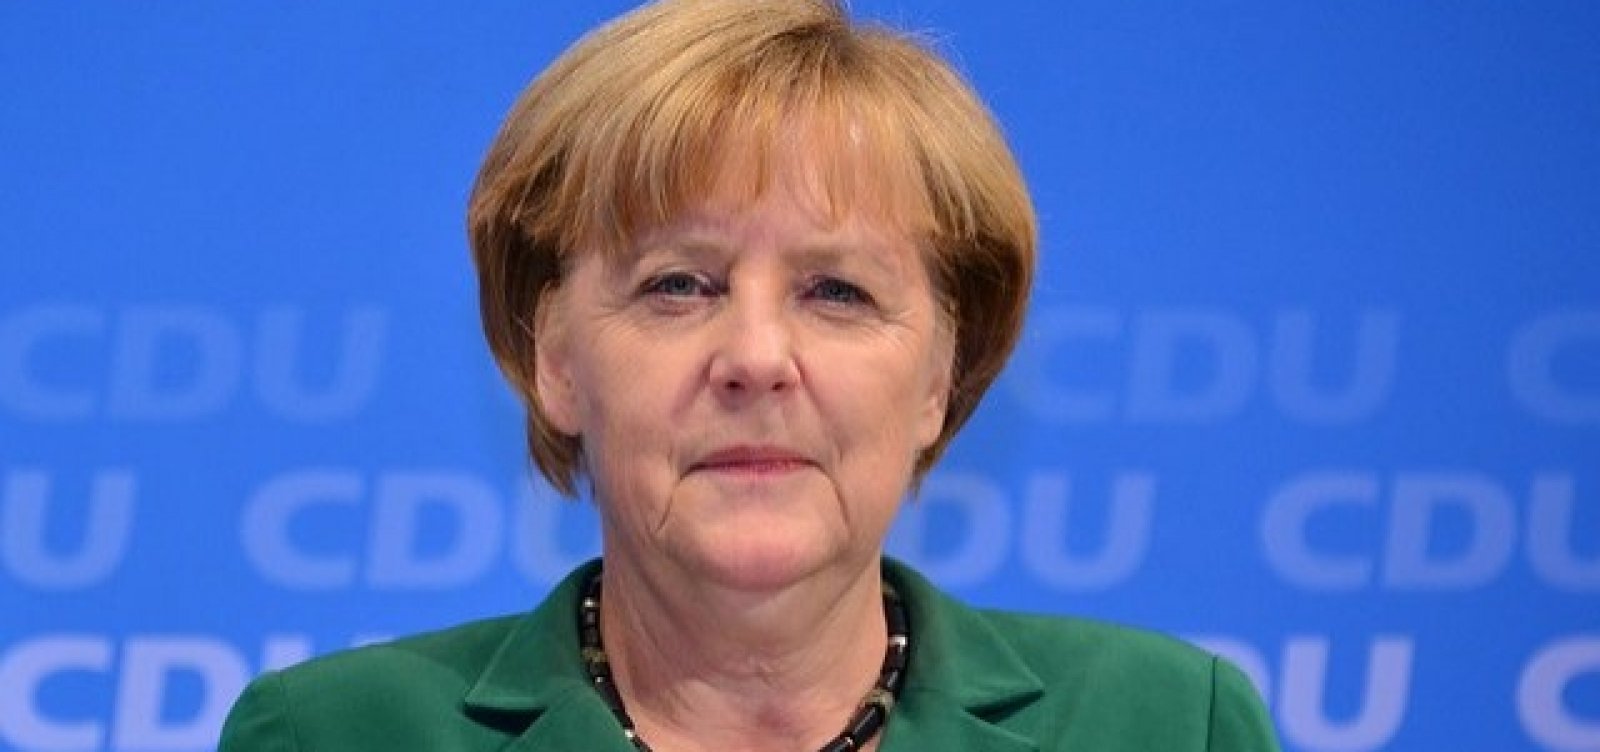 Merkel sinaliza a Johnson possível renegociação do Brexit